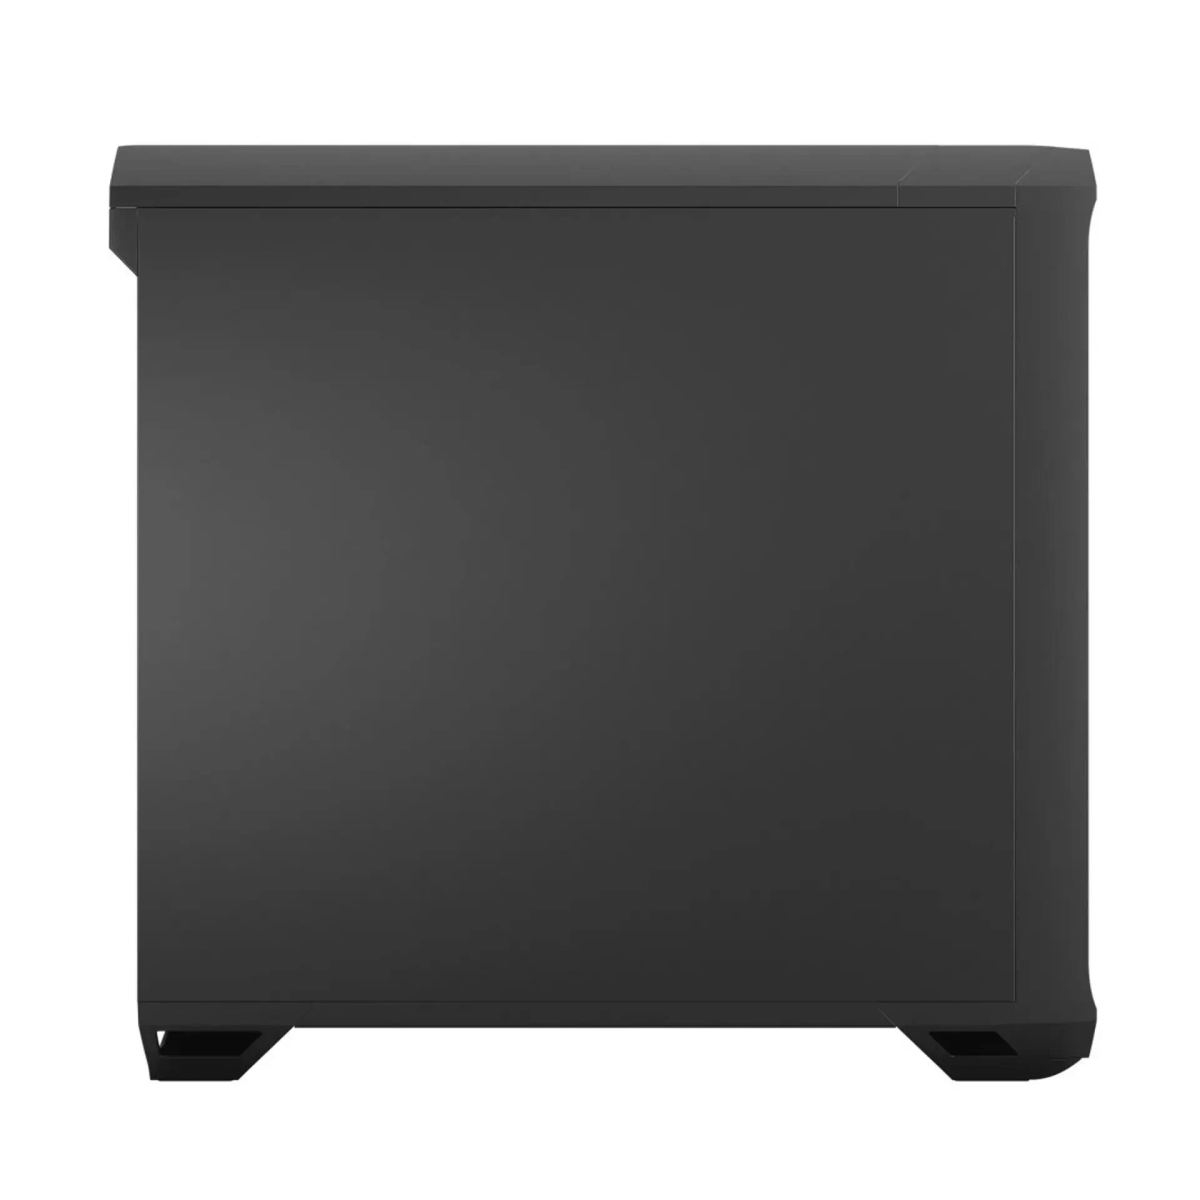 FRACTAL DESIGN Design Torrent Gehäuse, PC Black Compact Solid